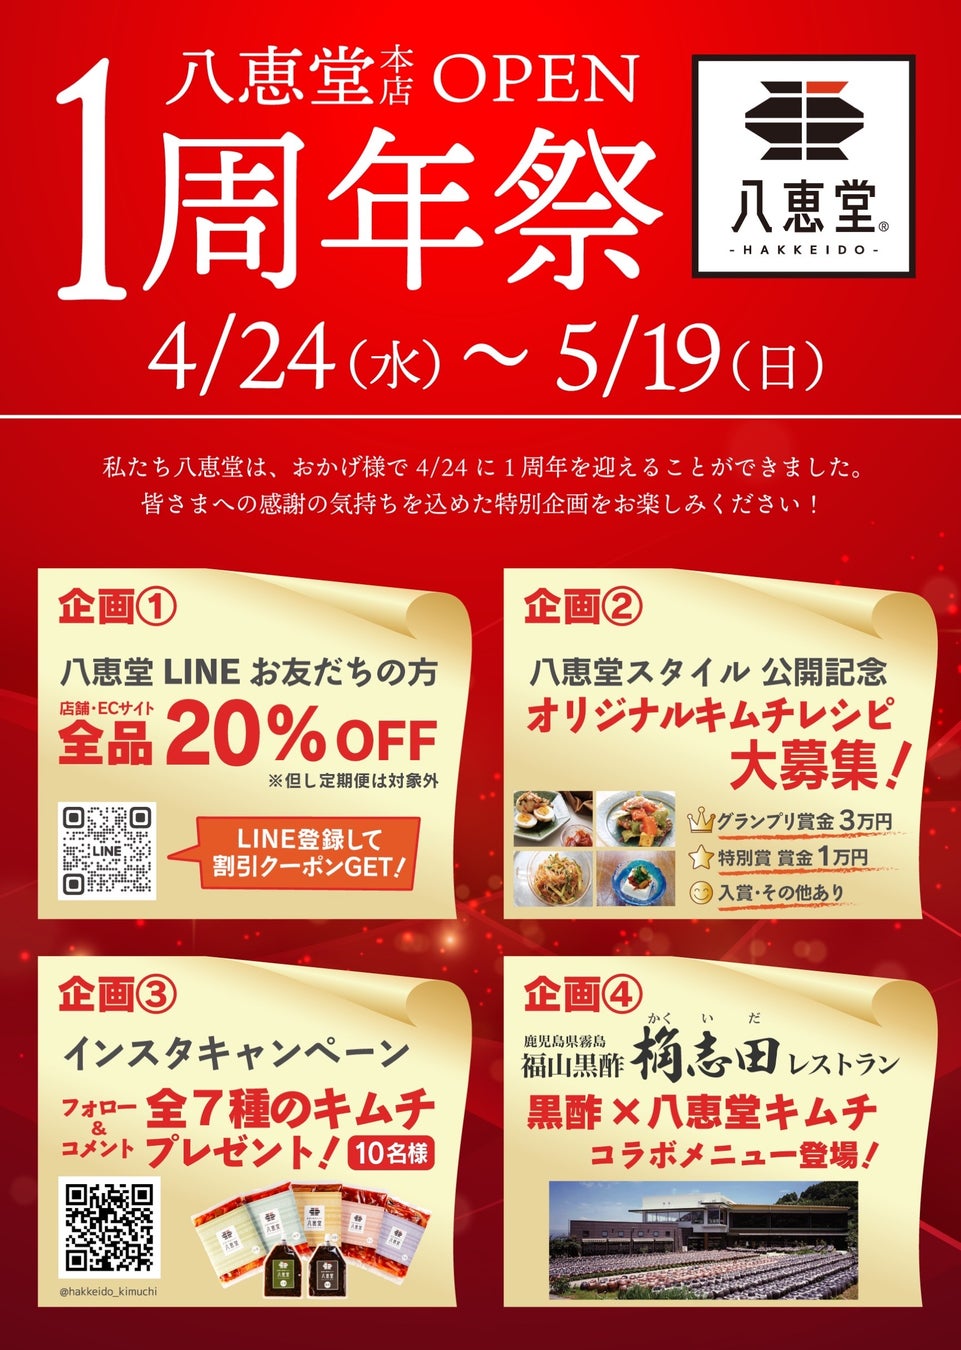 博多生まれの酵素キムチ「八恵堂」は、４月２４日に１周年を迎えました。